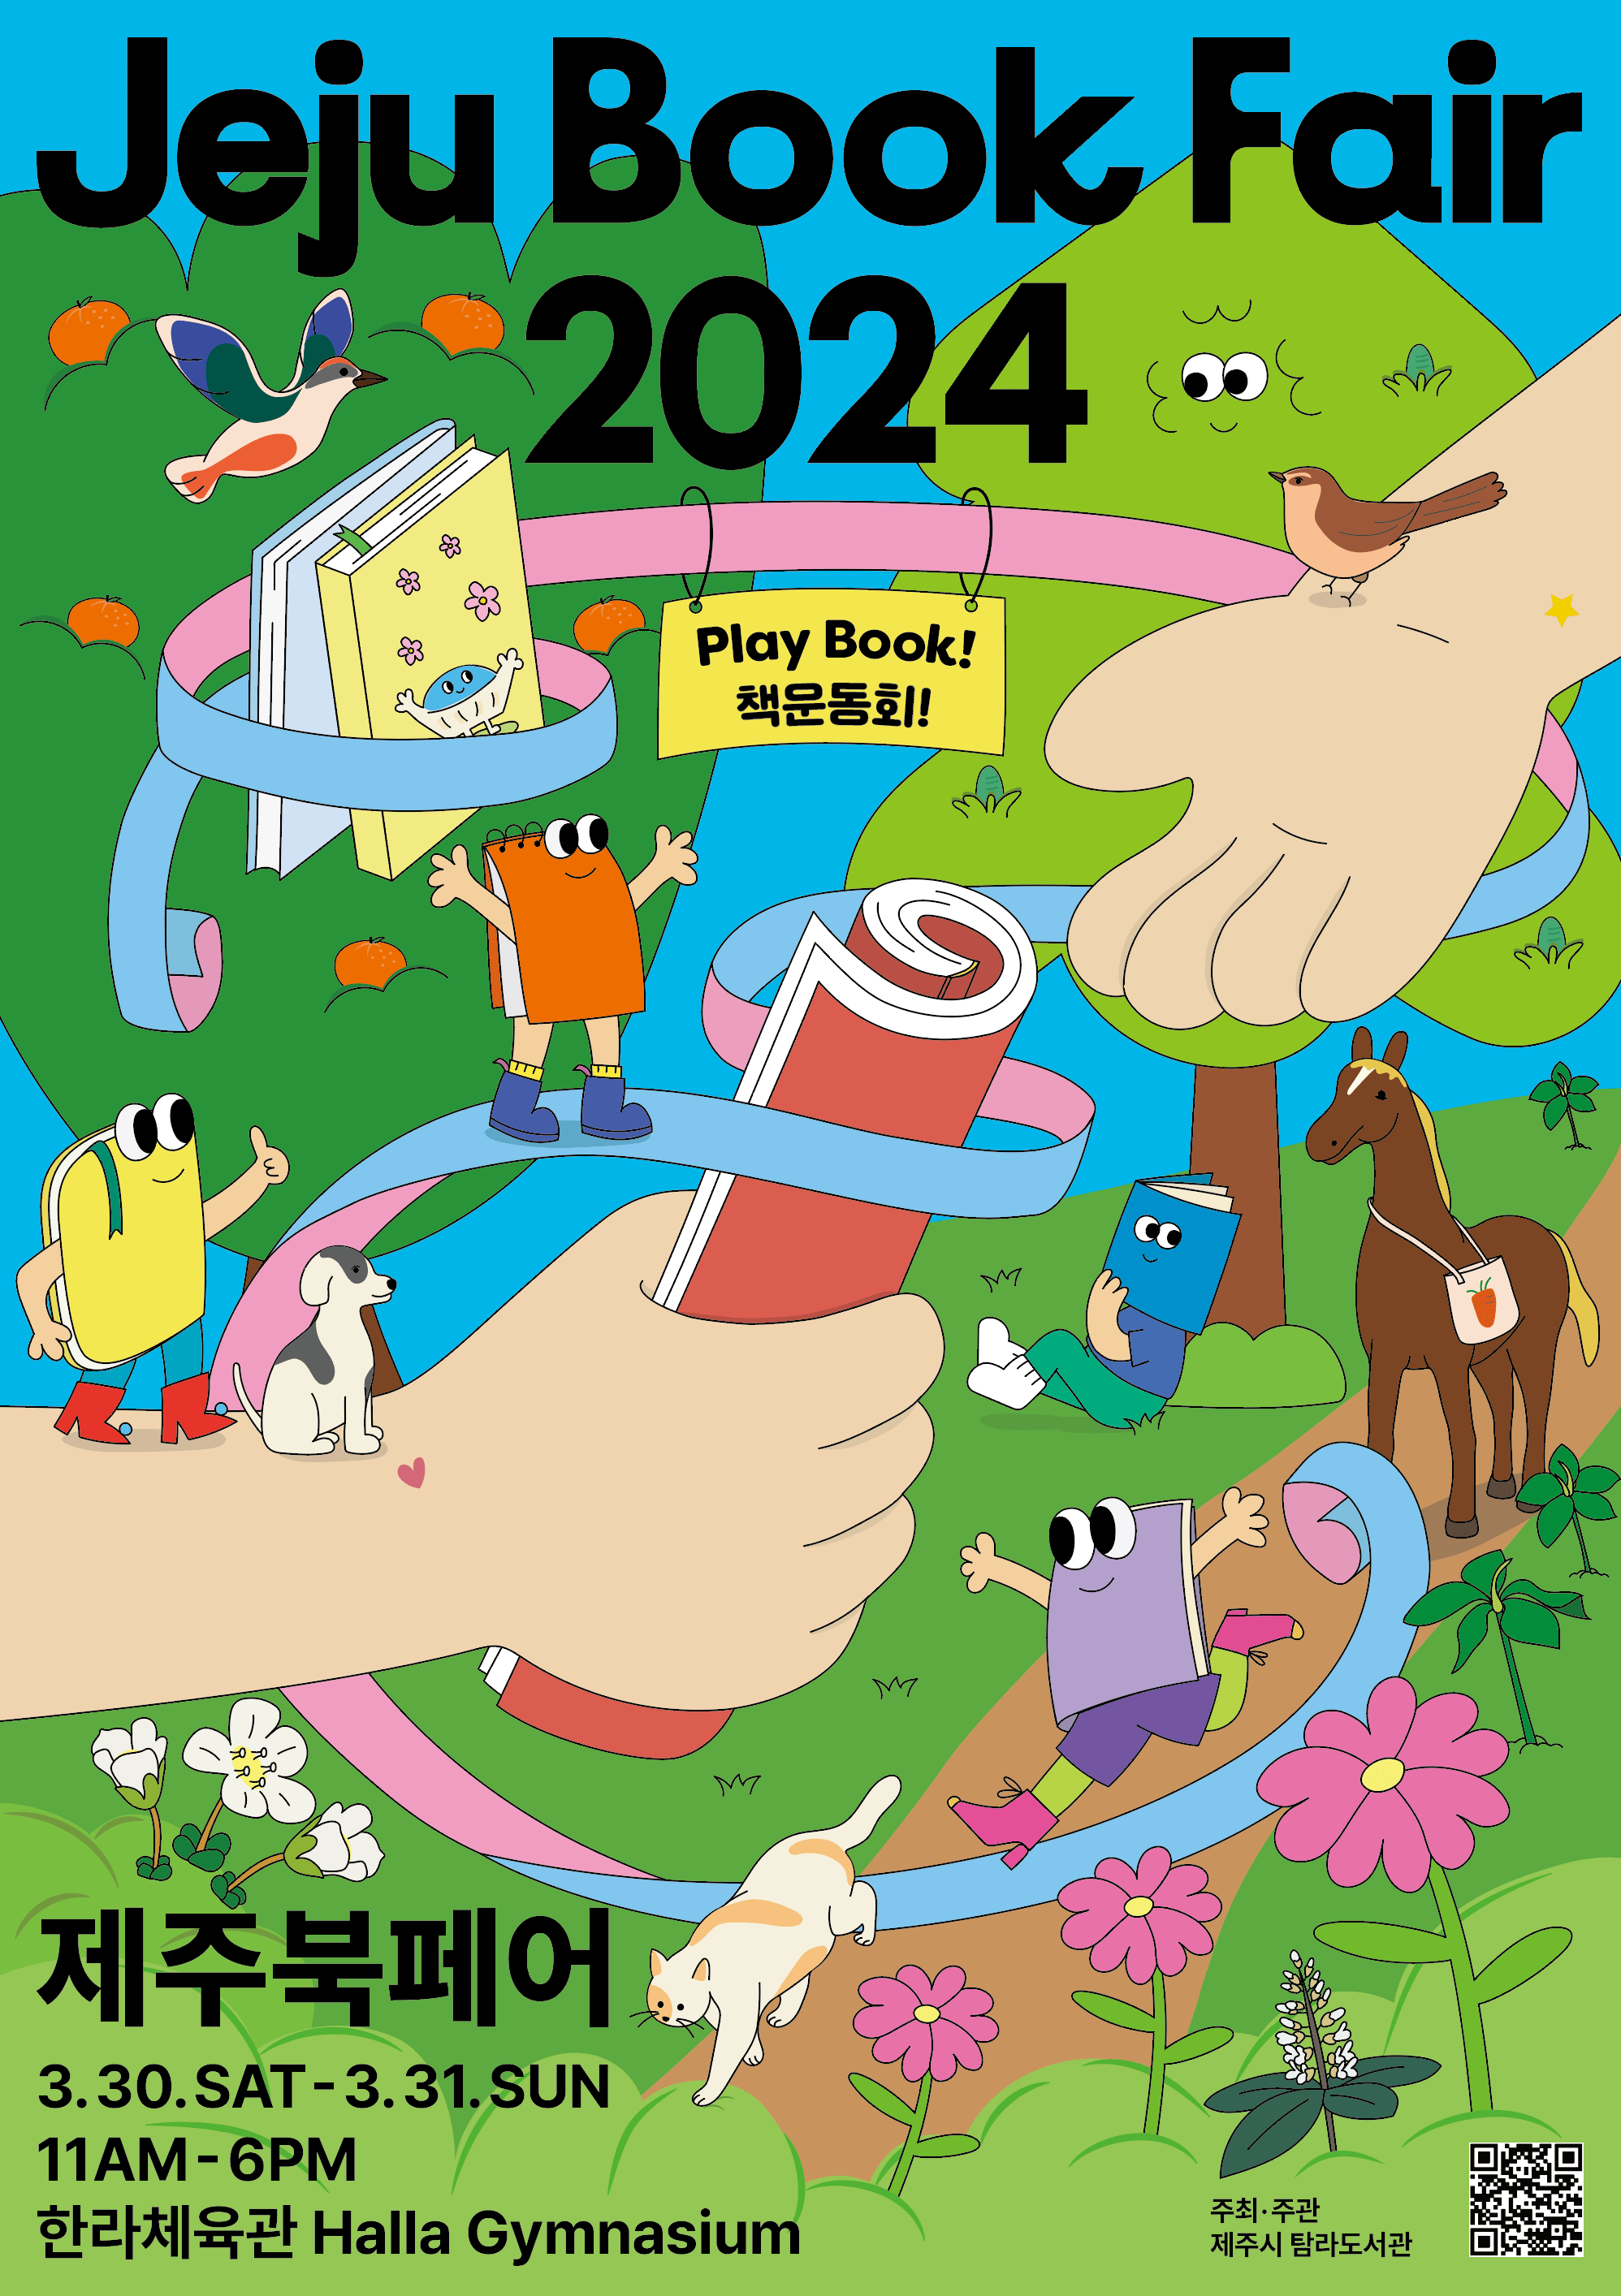 (3.28.탐라도서관)탐라도서관, 제주북페어 2024 책운동회 개최 포스터.png